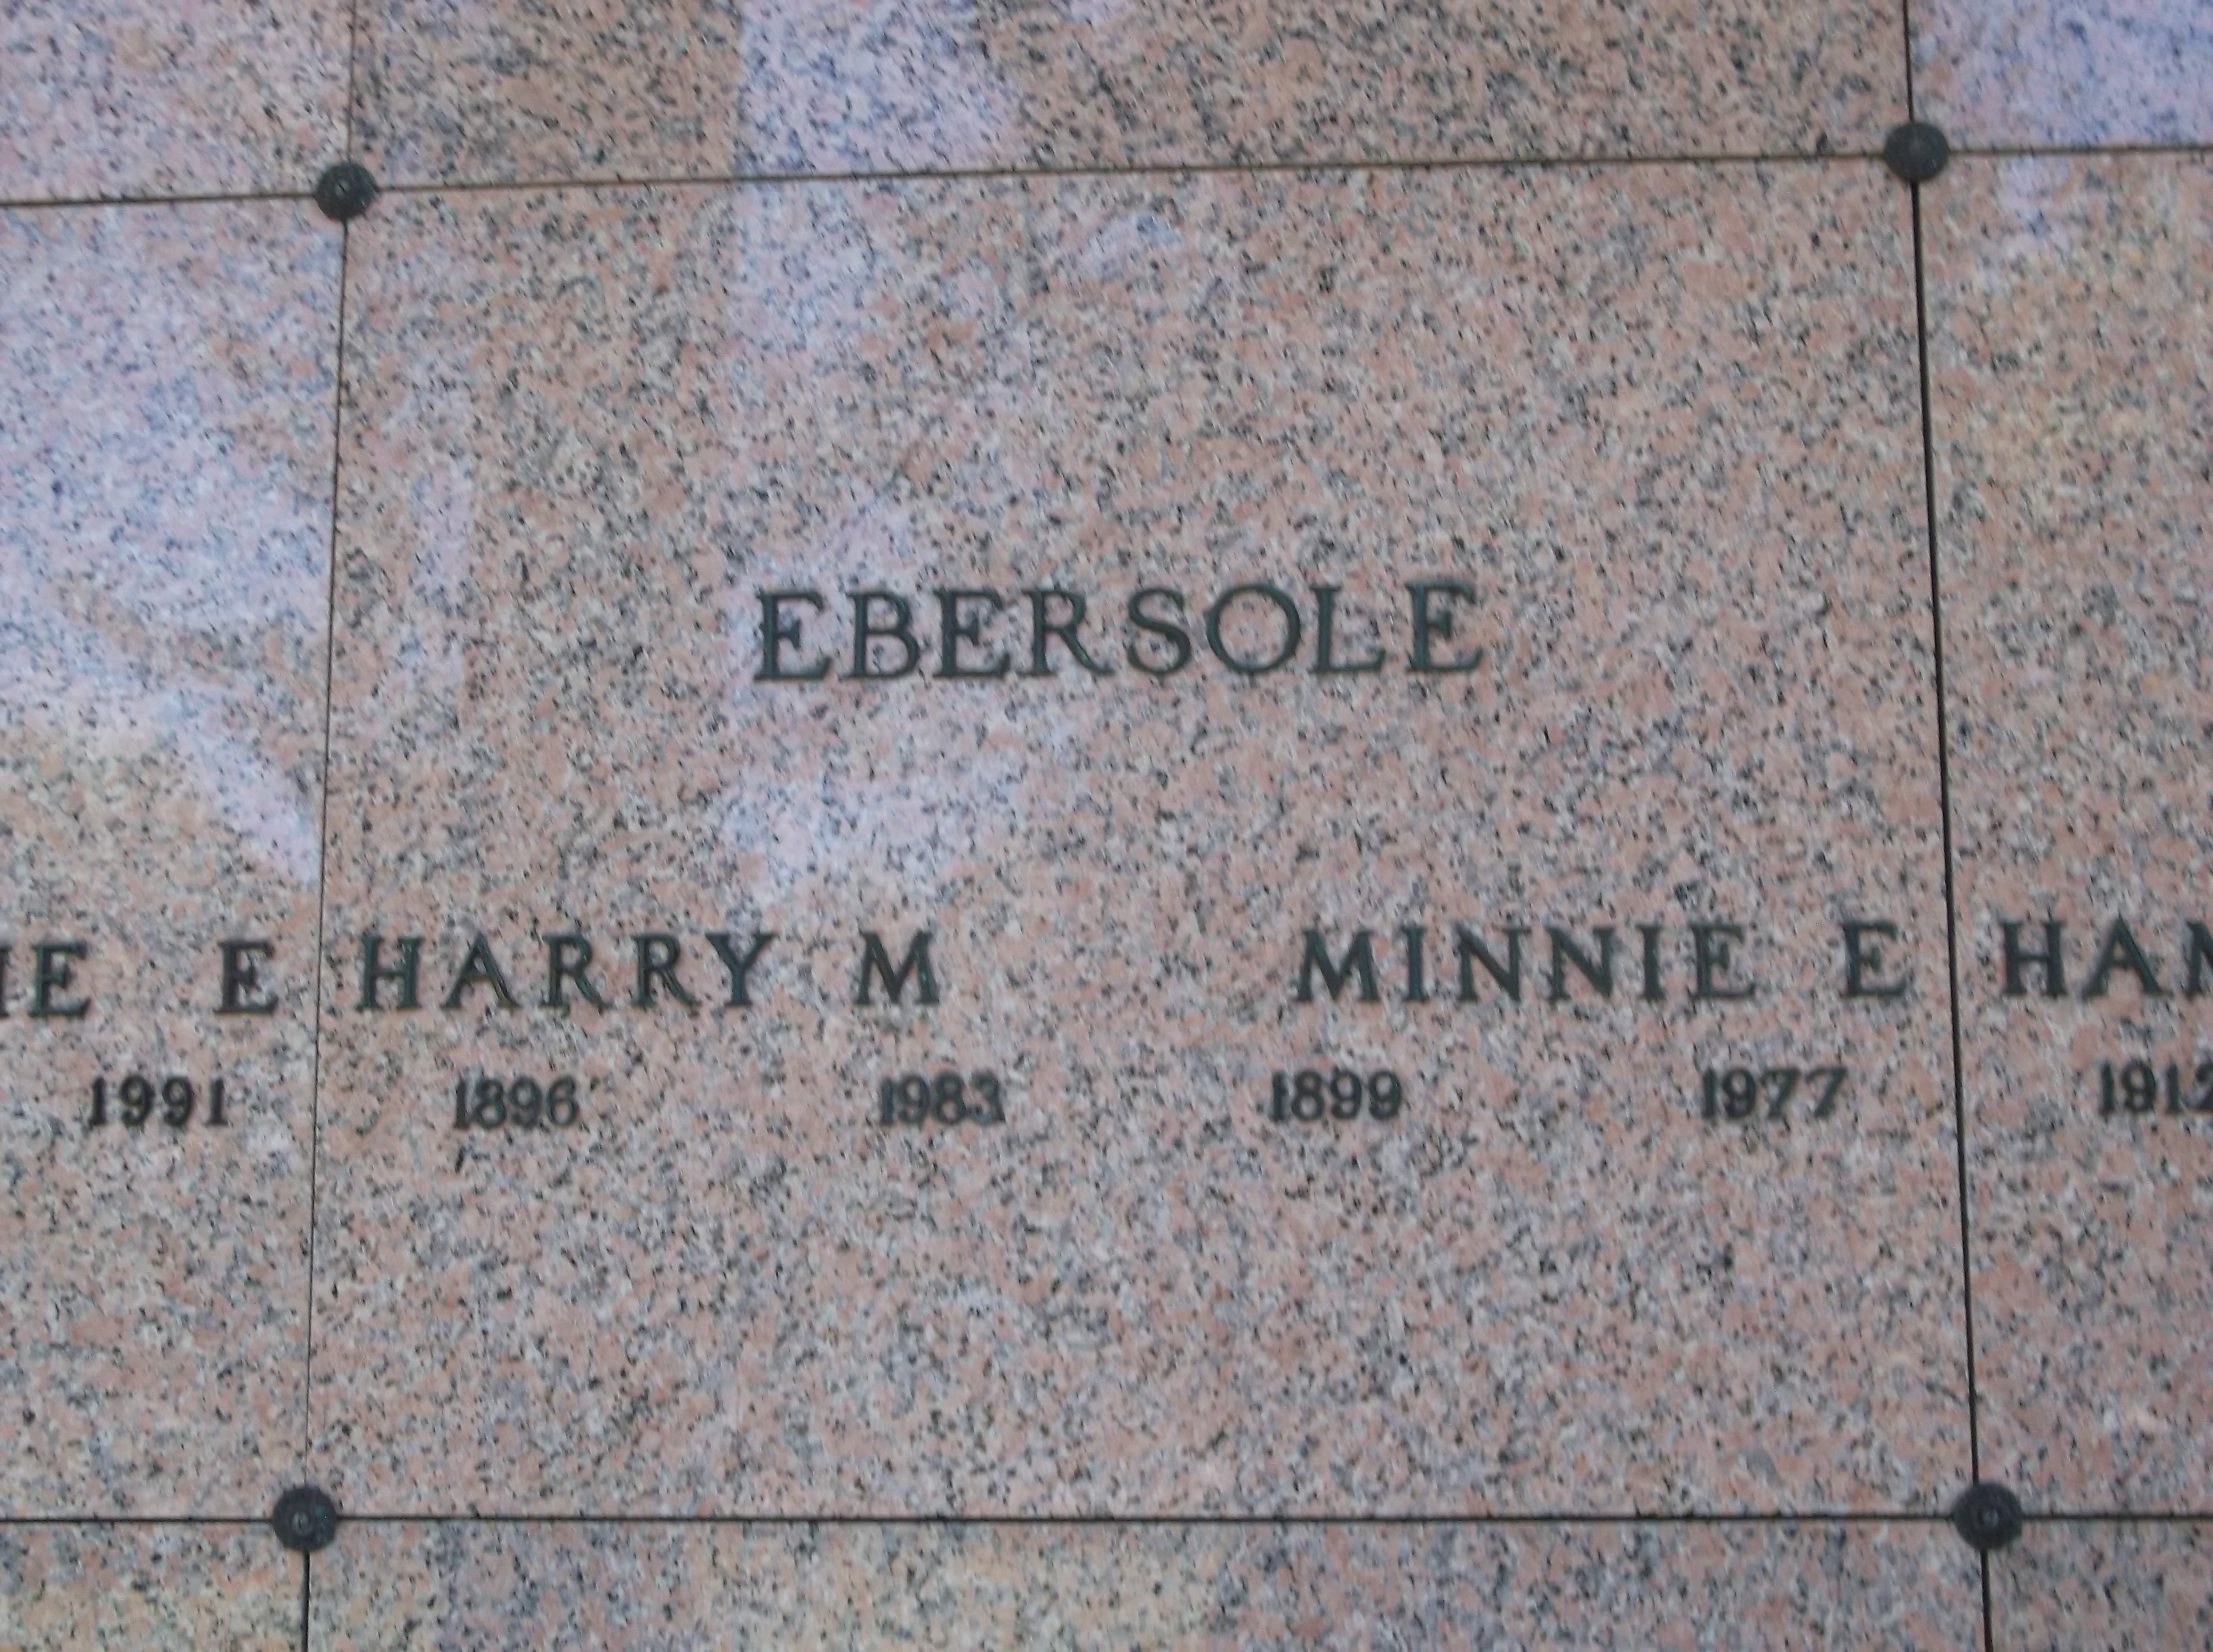 Minnie E Ebersole